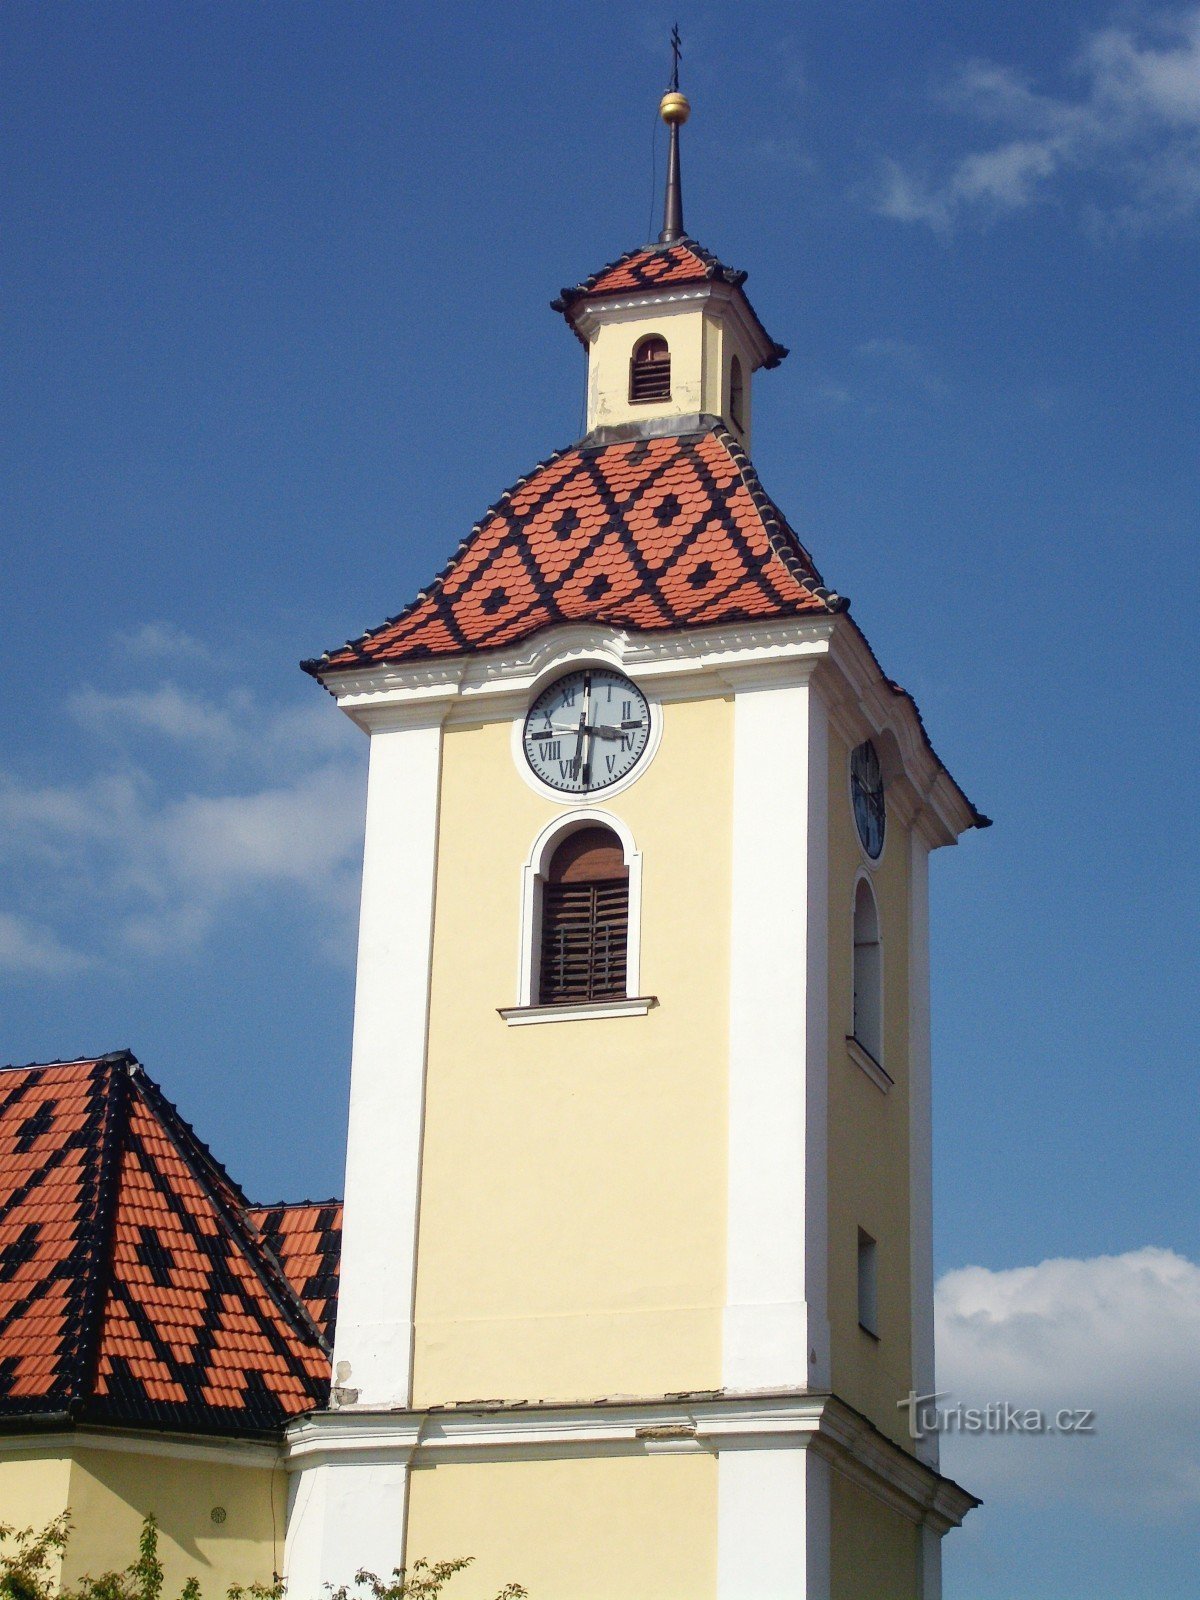 Kunovice (pri U. Hradiště) - cerkev sv. Petra in Pavla